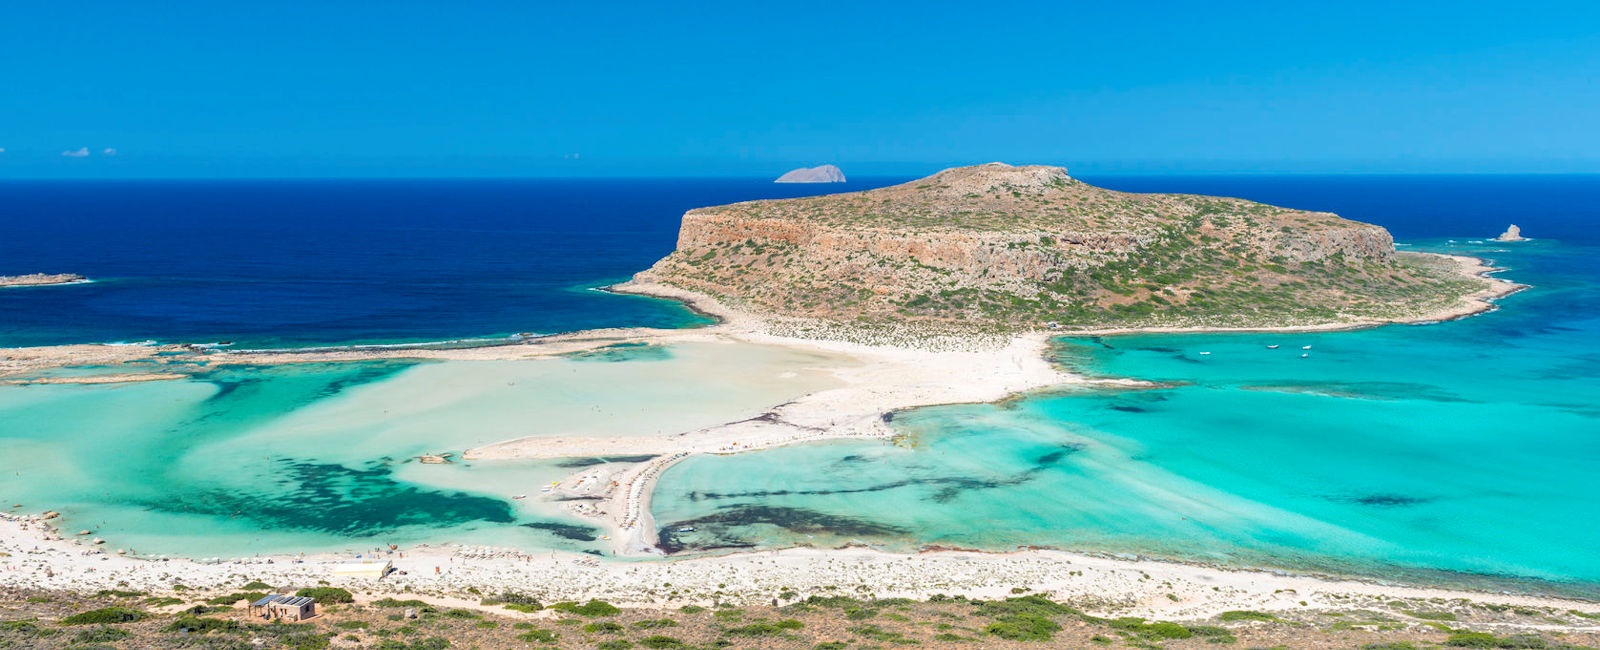 luxury crete holidays